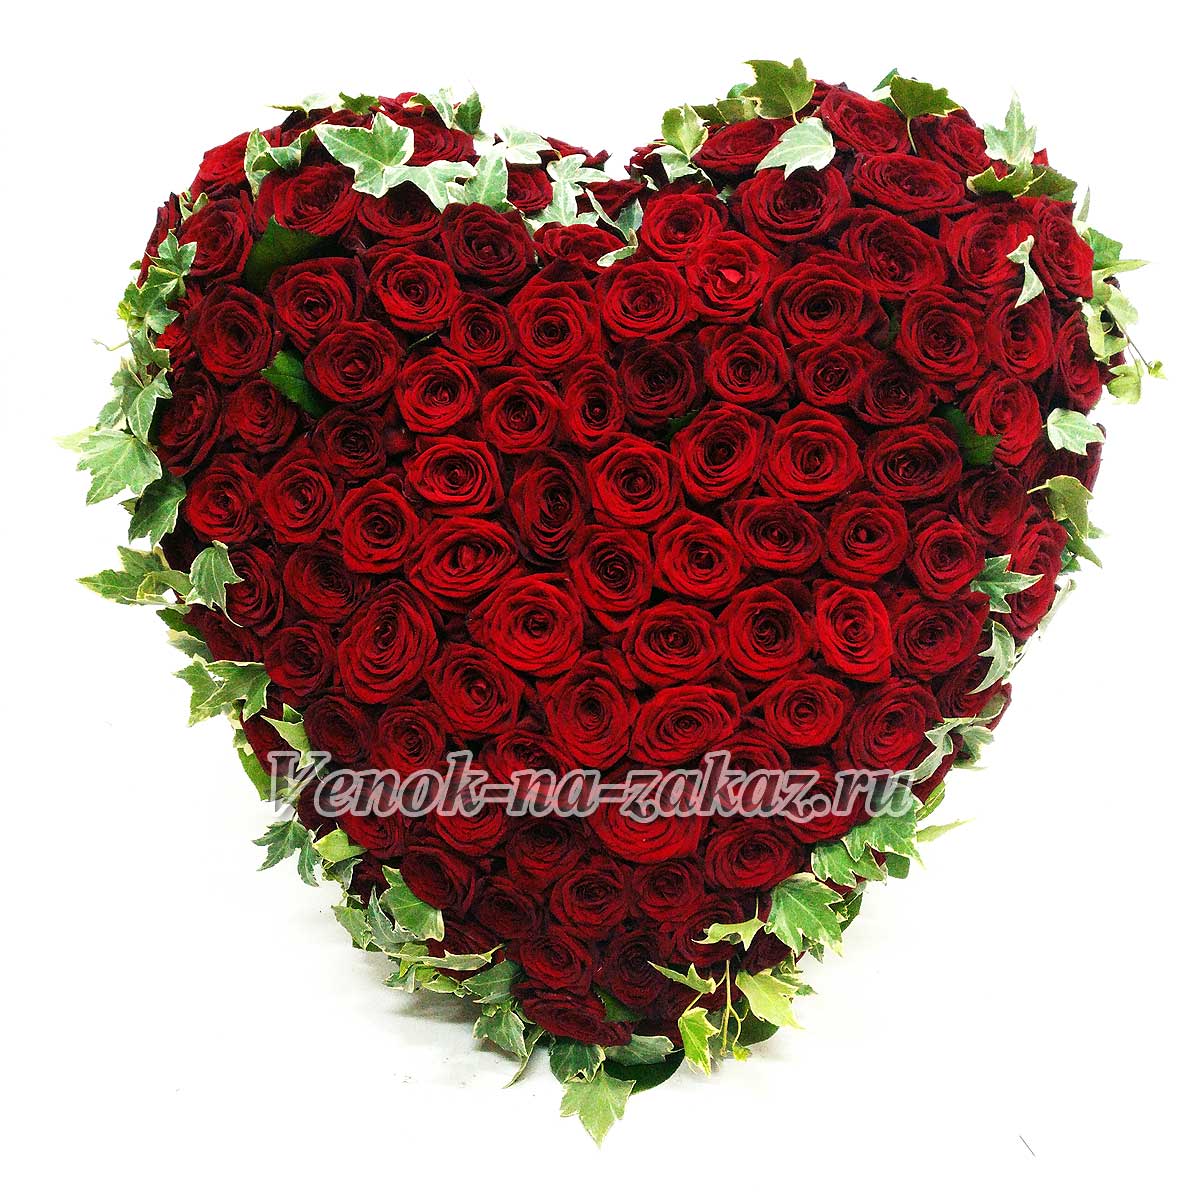 Заказать венок сердце из бордовых роз и плюща на похороны - Венки сердце от Venok-na-zakaz.ru